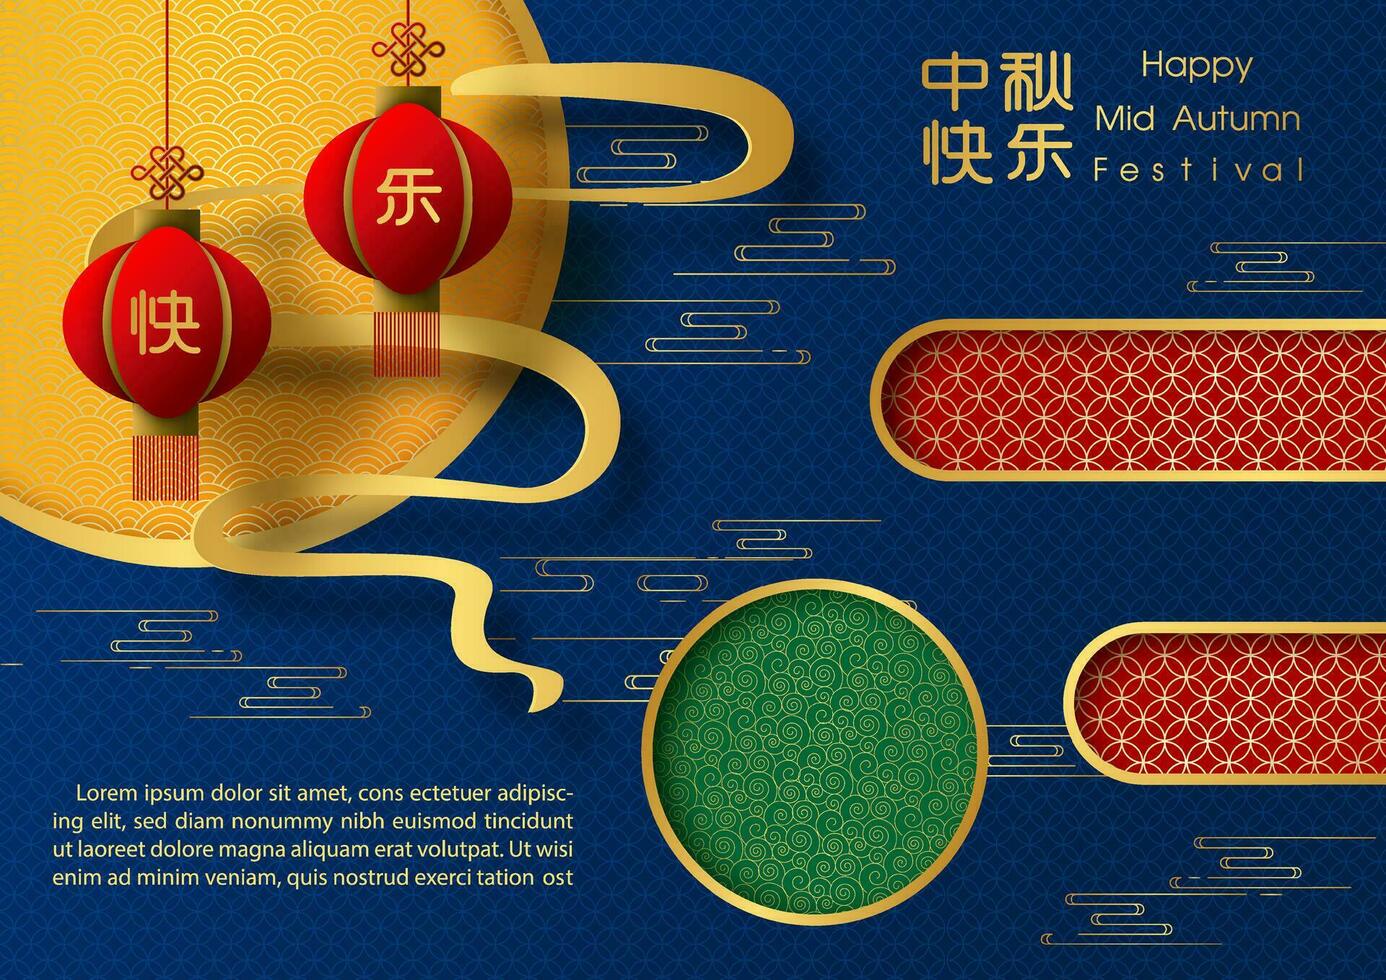 kinesisk lyktor hänga med cirklar dekoration och lydelse av händelse, exempel texter på kinesisk mönster och blå bakgrund. Allt i papper skära stil och kinesisk texter är menande mitten höst i engelsk vektor